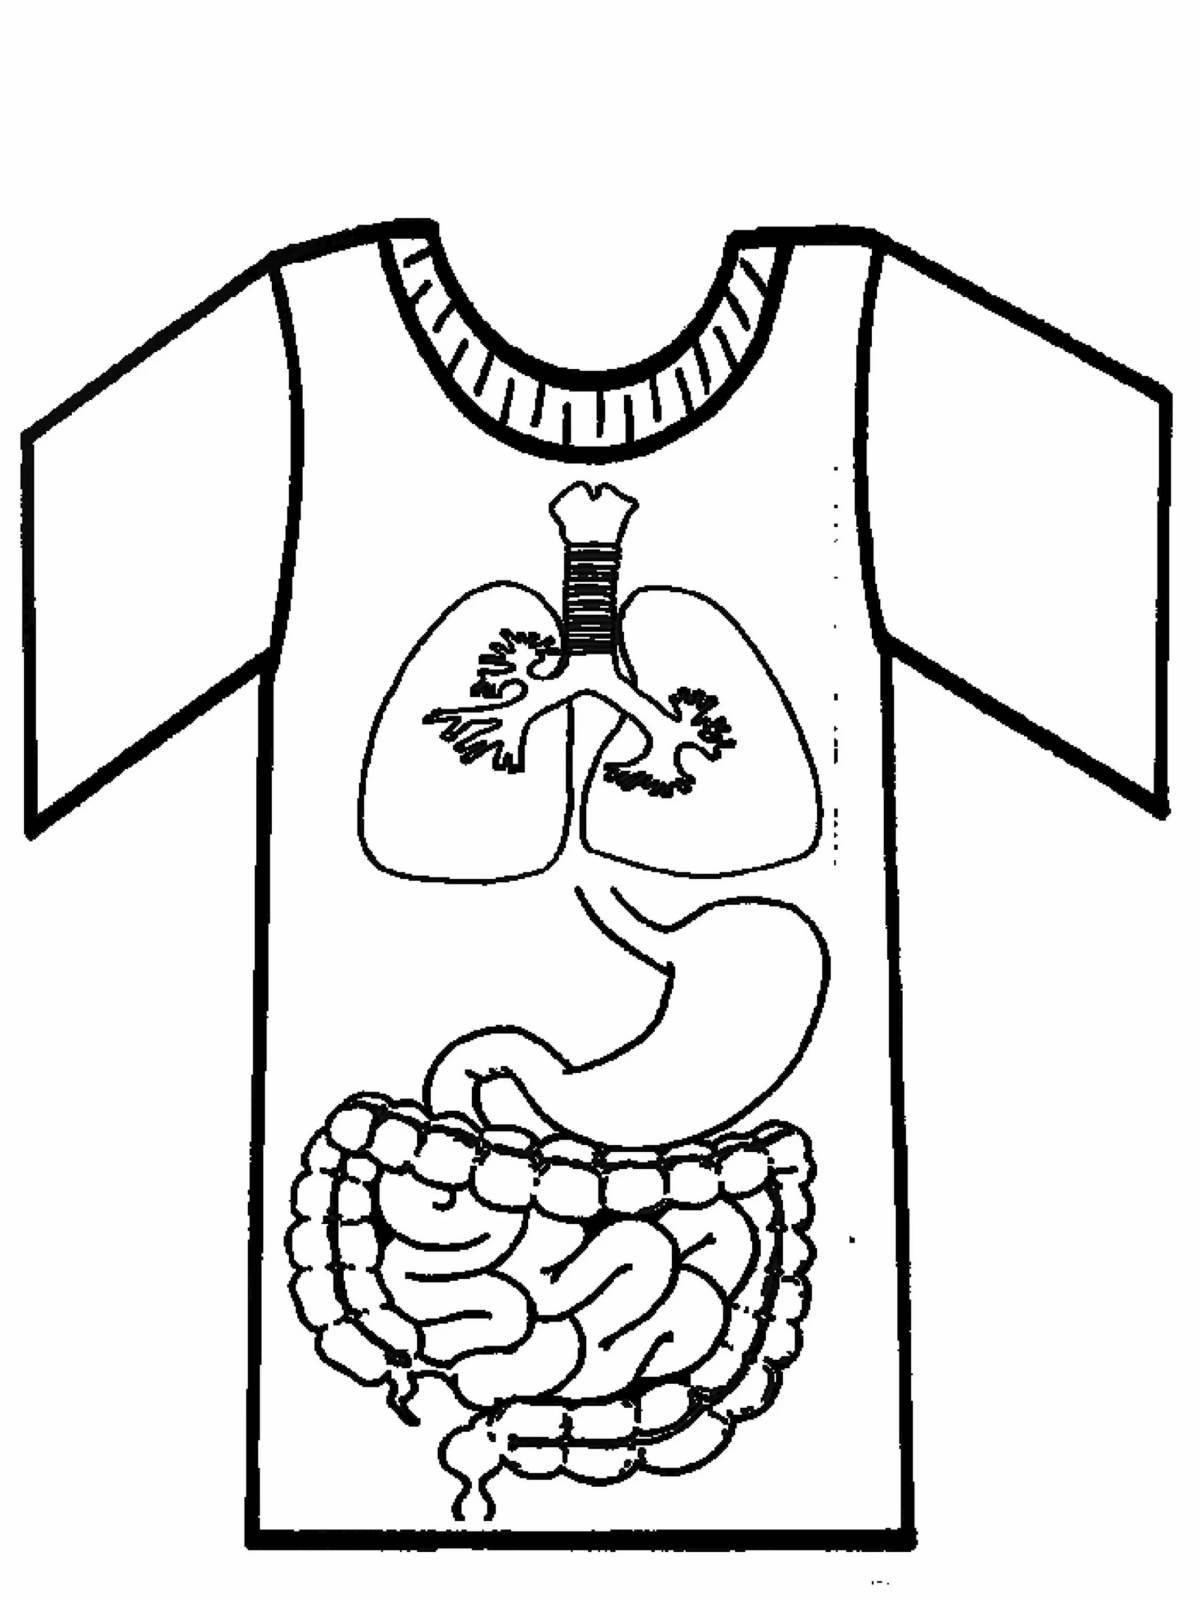 Увлекательная раскраска человеческое тело с внутренними органами для детей